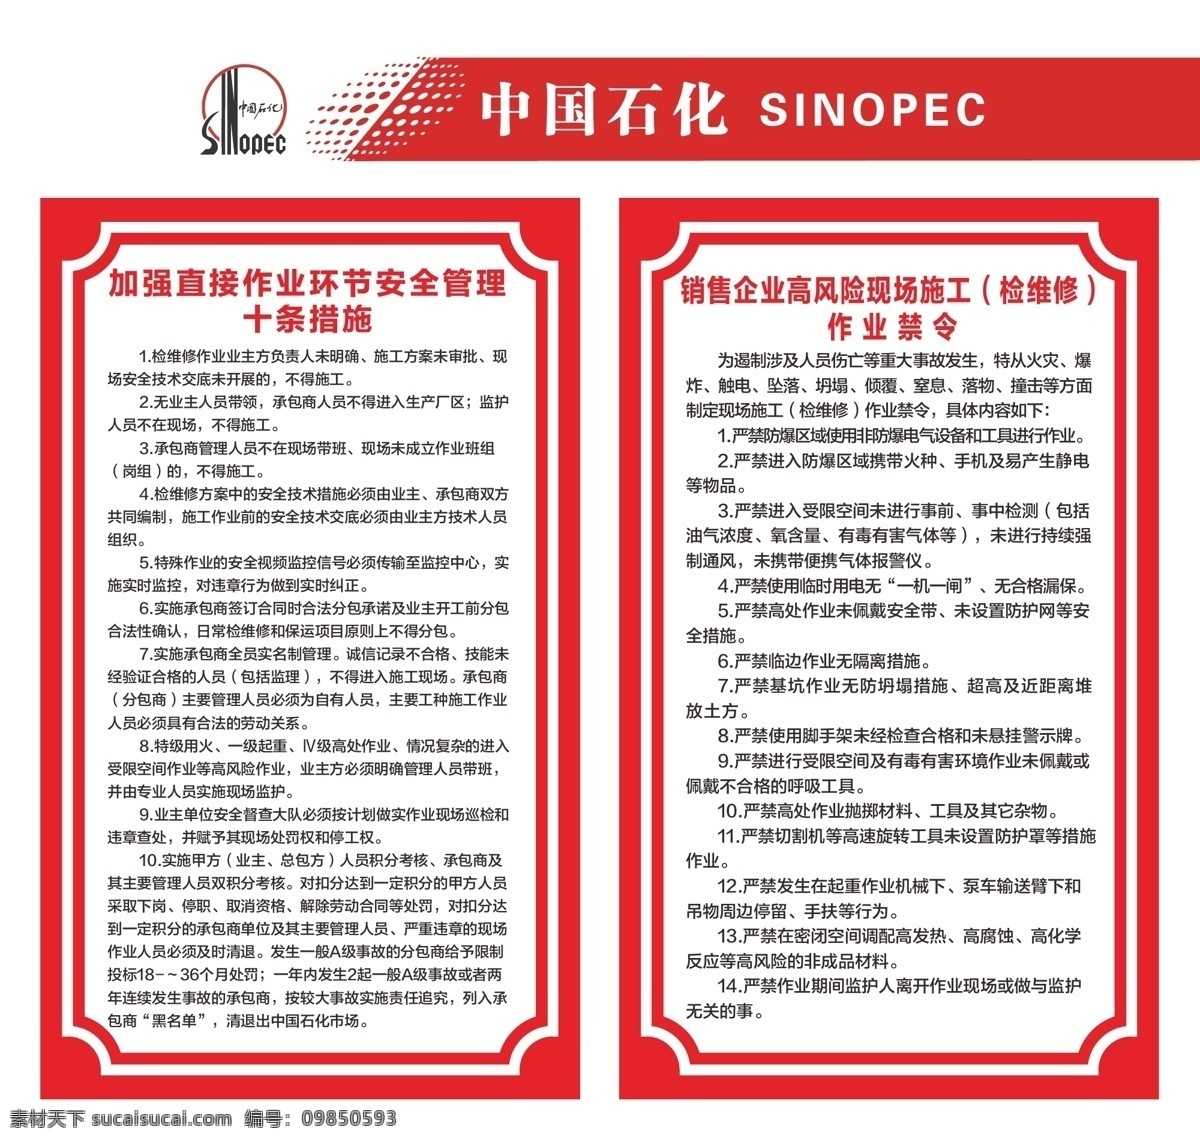 中国石化 制度 牌 中石化制度牌 制度牌 十条措施 作业禁令